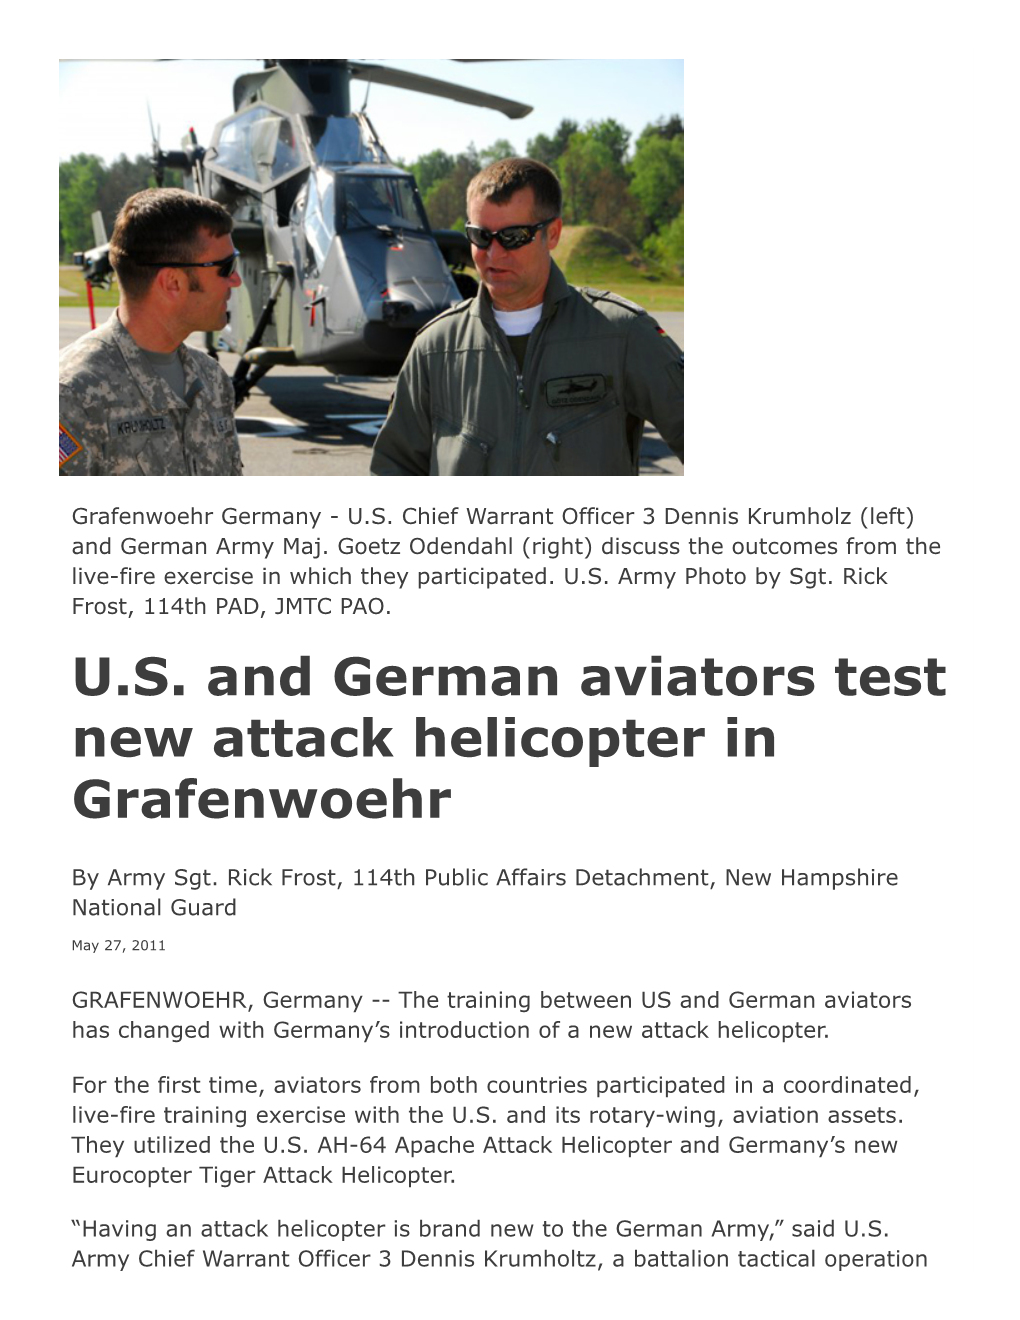 U.S. and German Aviators Test New Attack Helicopter in Grafenwoehr